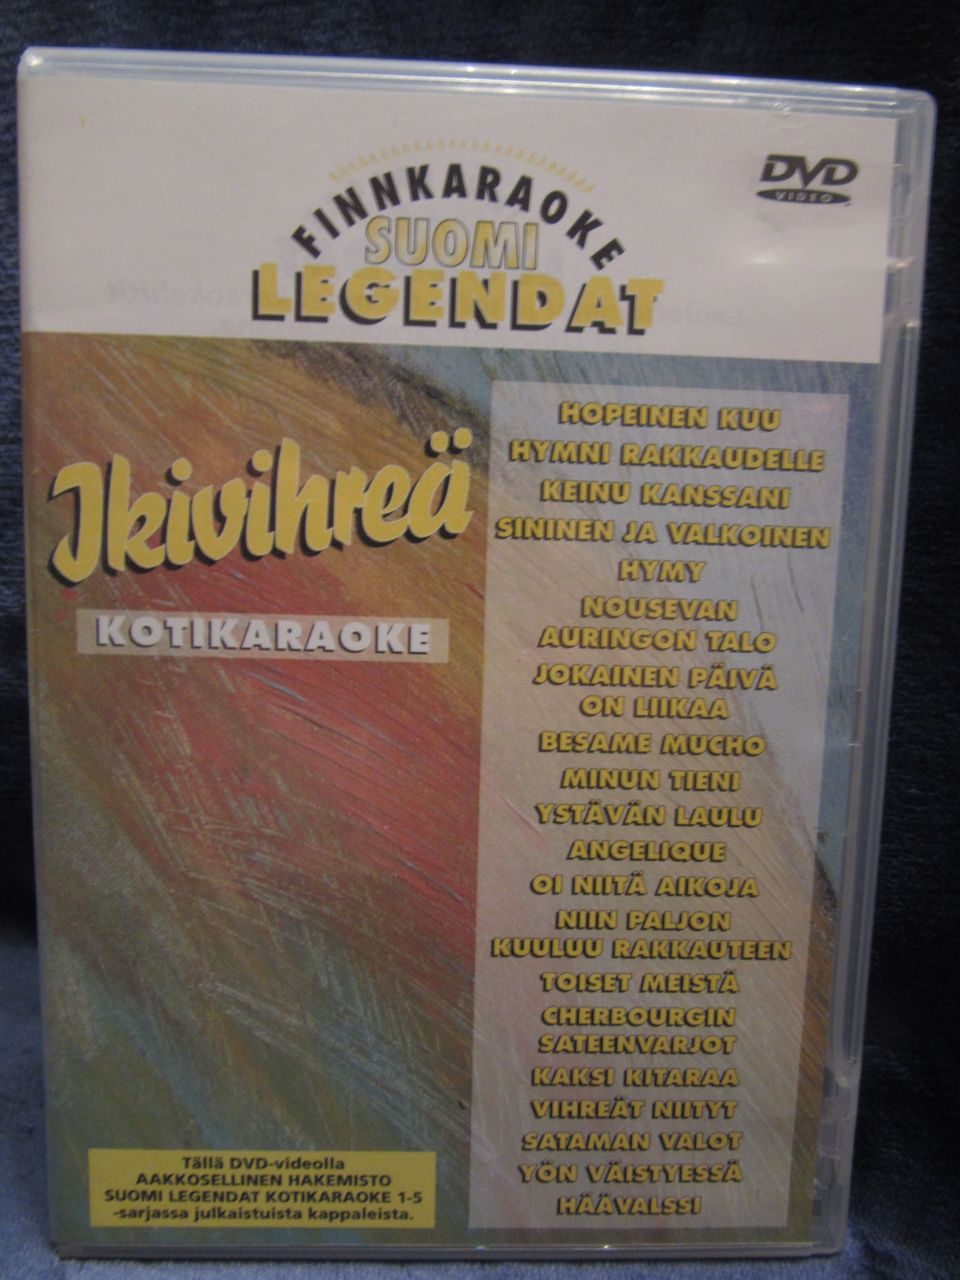 Suomi Legendat Kotikaraoke dvd